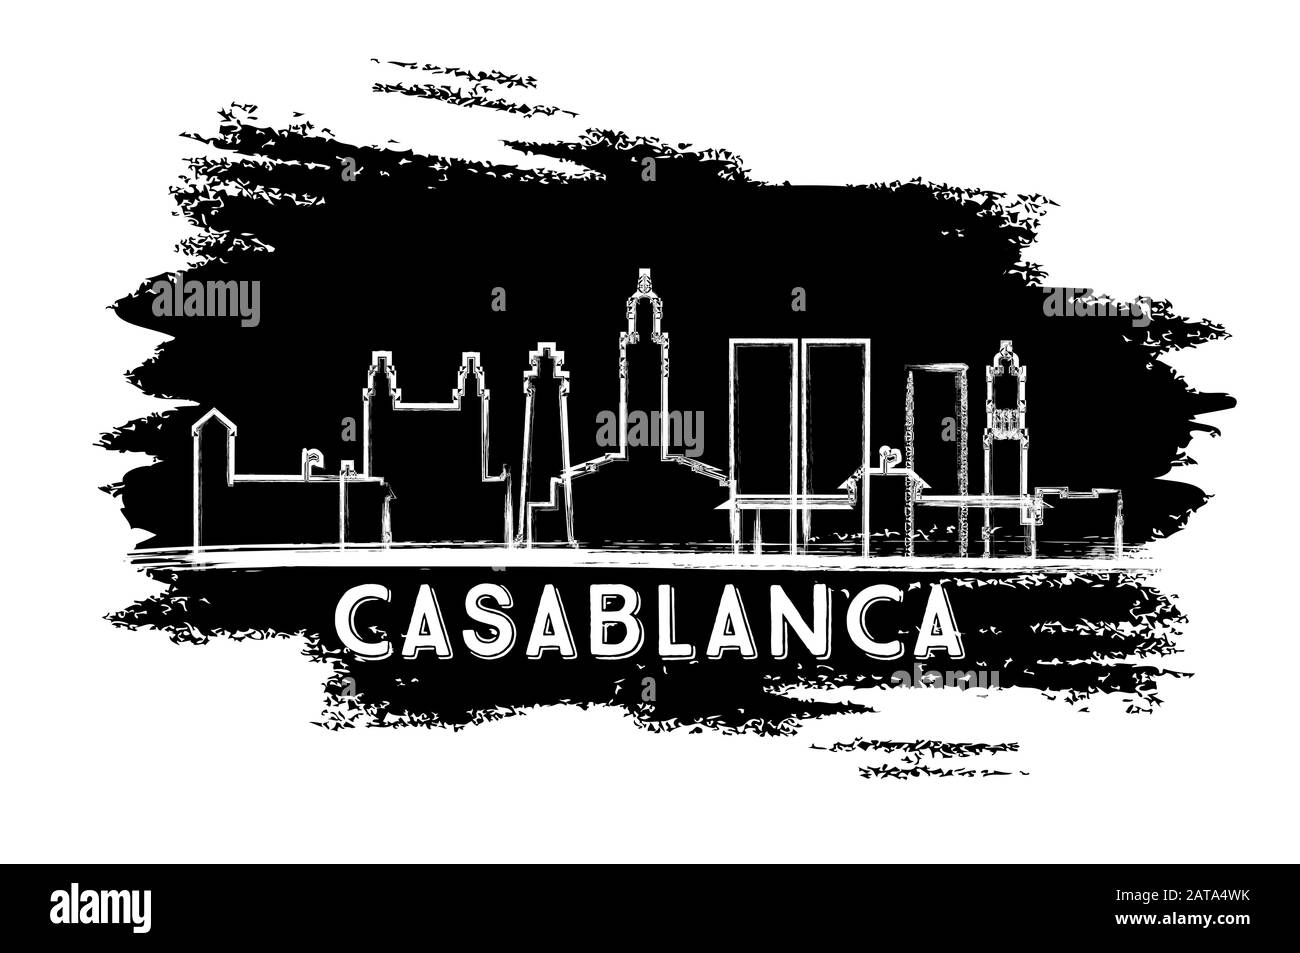 Casablanca Maroc Ville Skyline Silhouette. Esquisse Dessinée À La Main. Illustration Vectorielle. Concept De Voyage D'Affaires Et De Tourisme Avec Architecture Moderne. Illustration de Vecteur